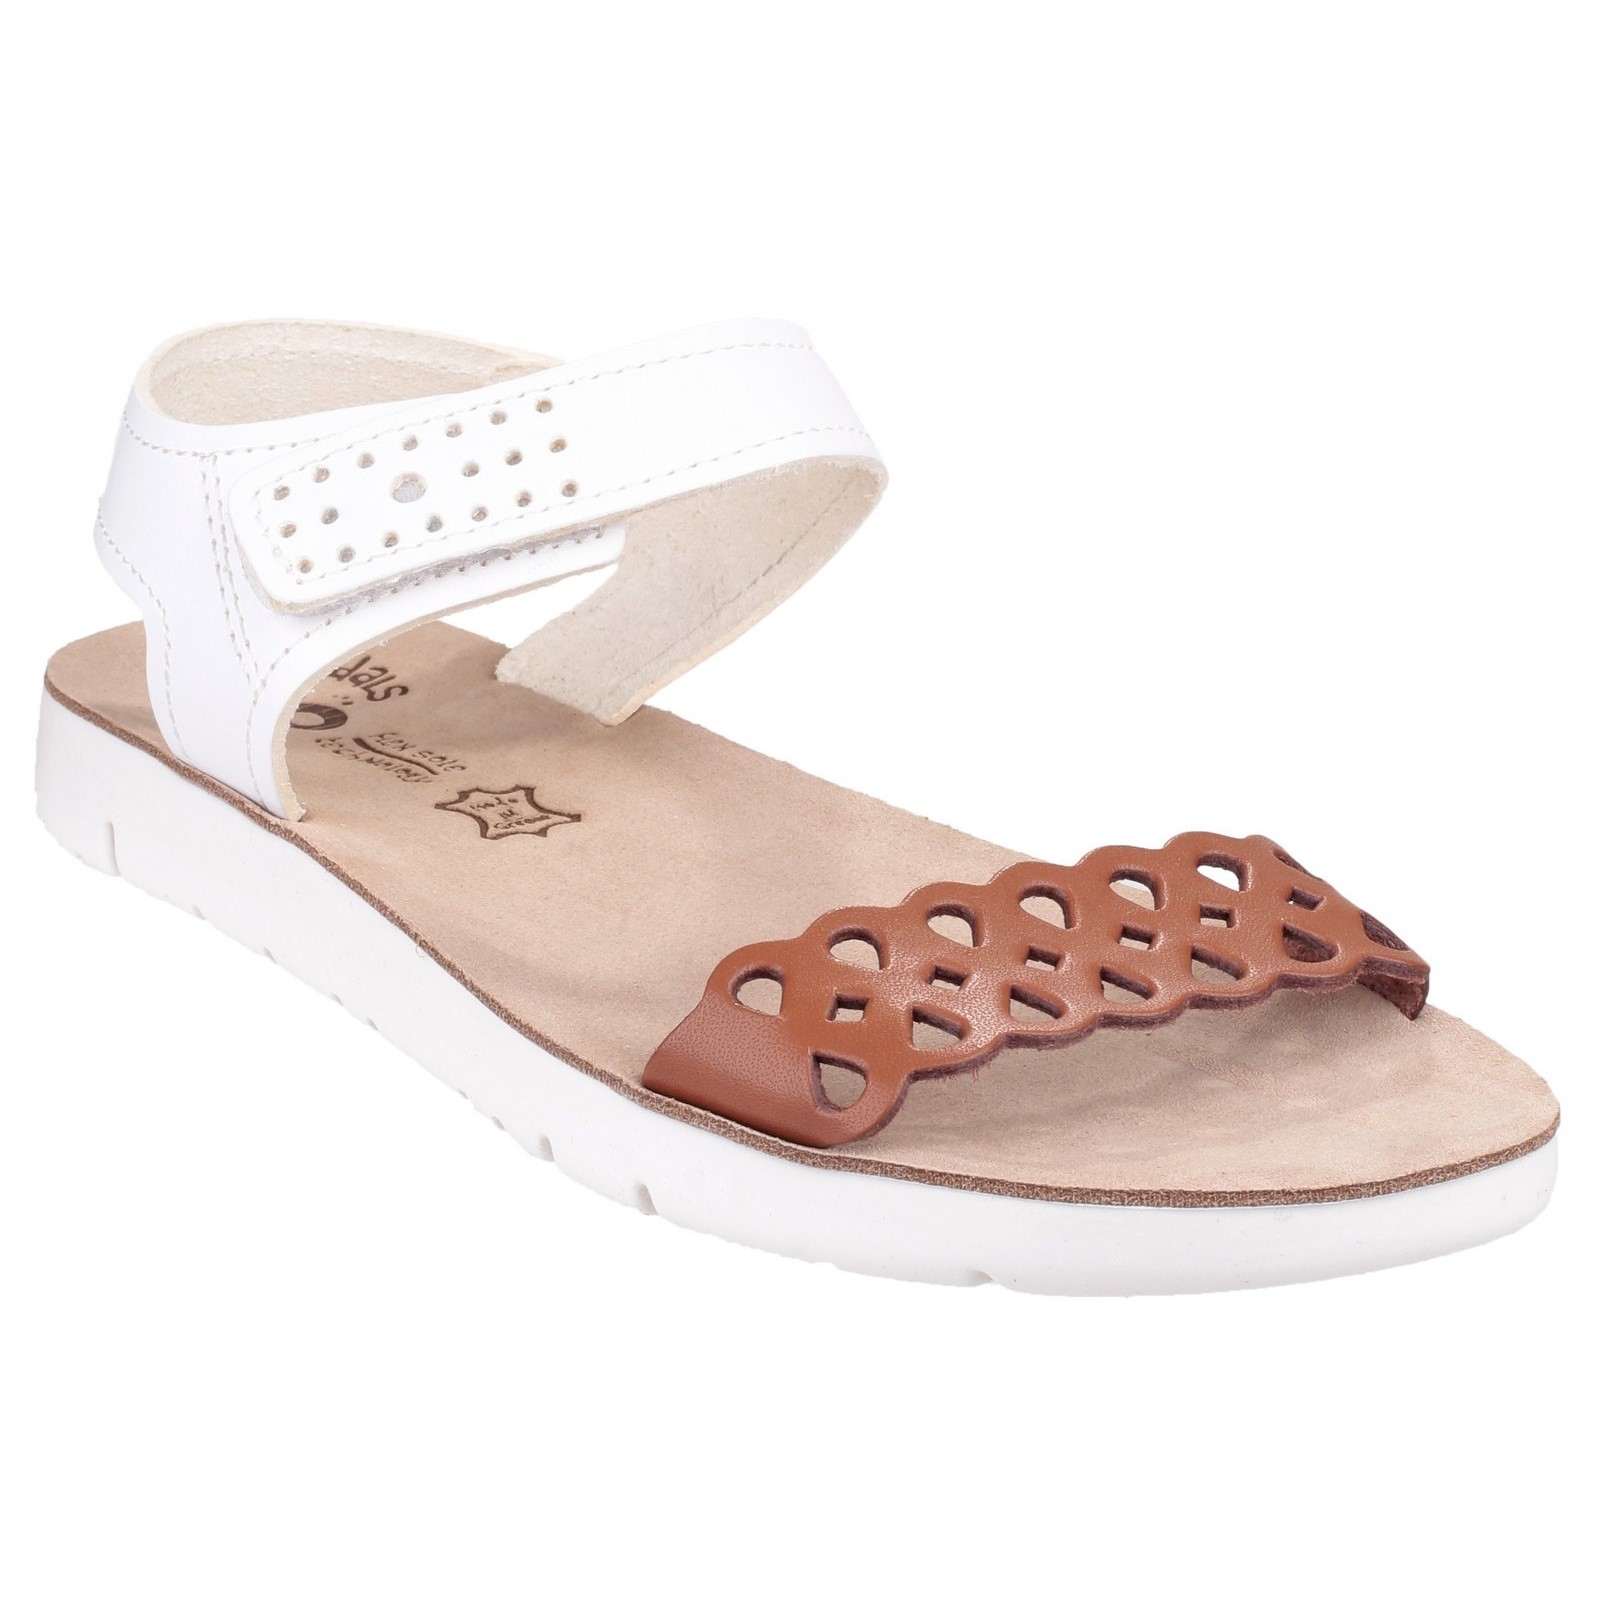 Agios Ladies Summer Sandal